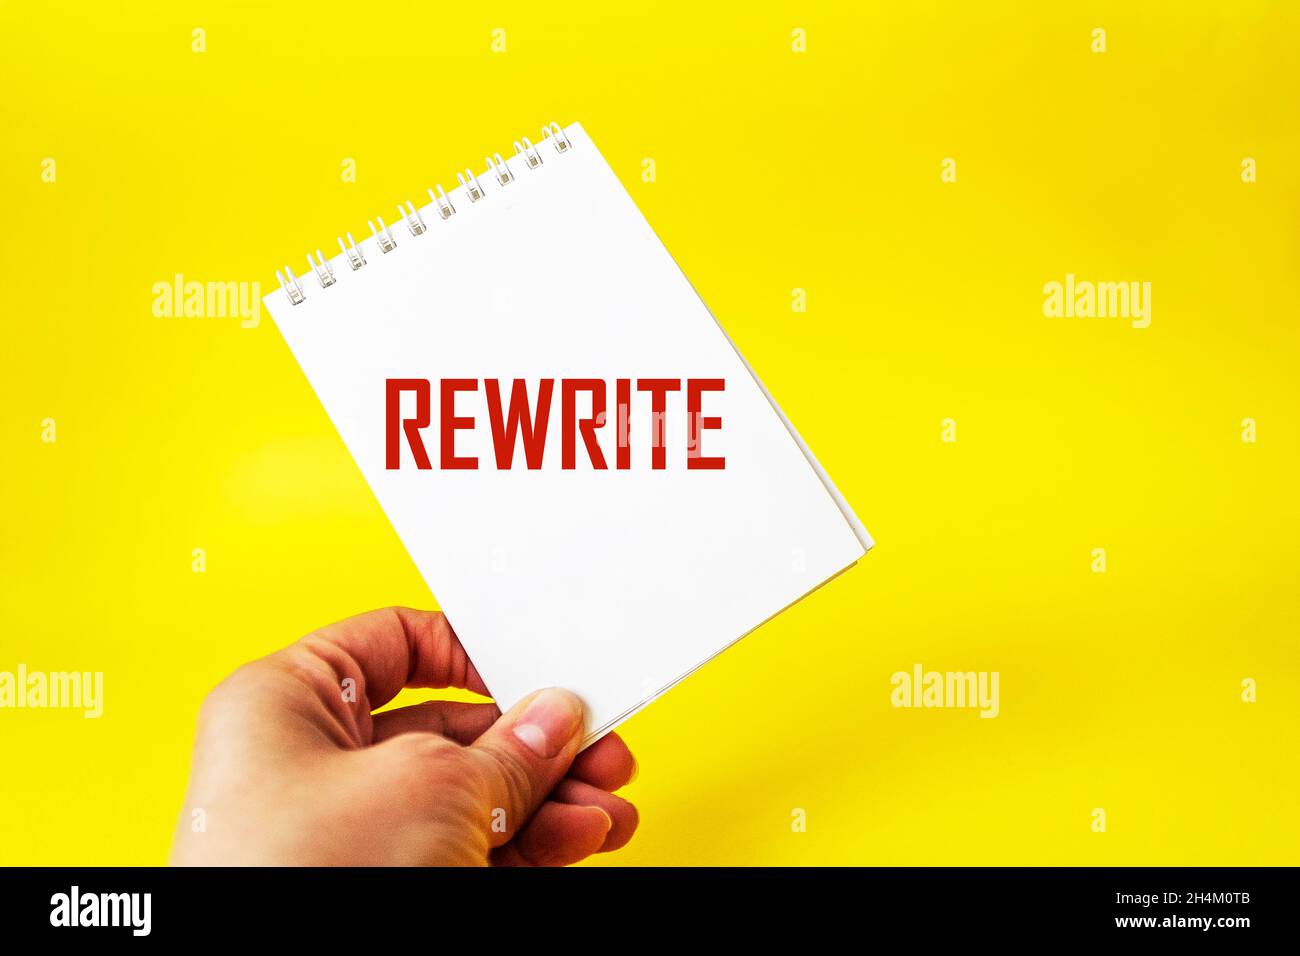 Das Wort rewrite auf einem Notizbuch in einer weiblichen Hand und einem gelben Hintergrund Stockfoto